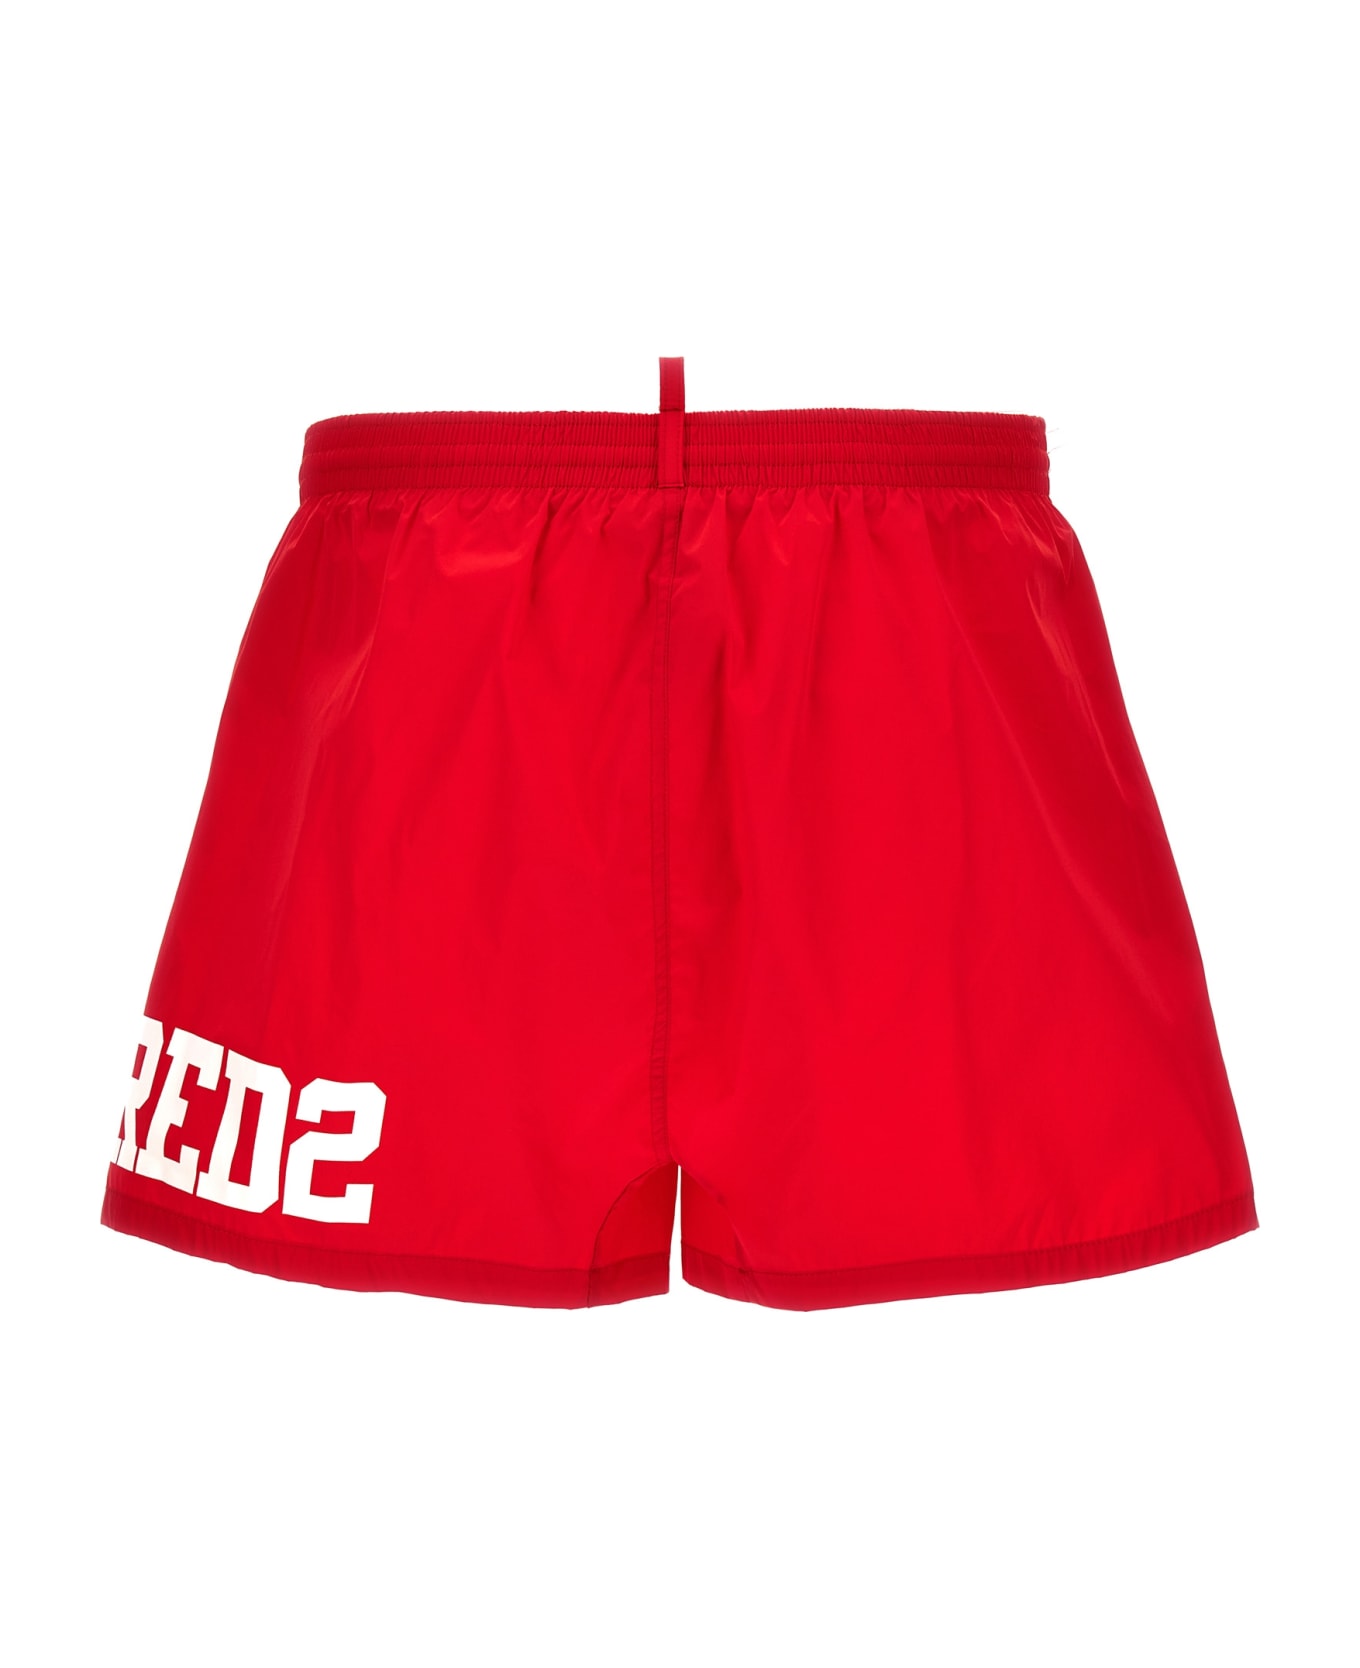 Dsquared2 Midi Boxer Shorts - Red/white